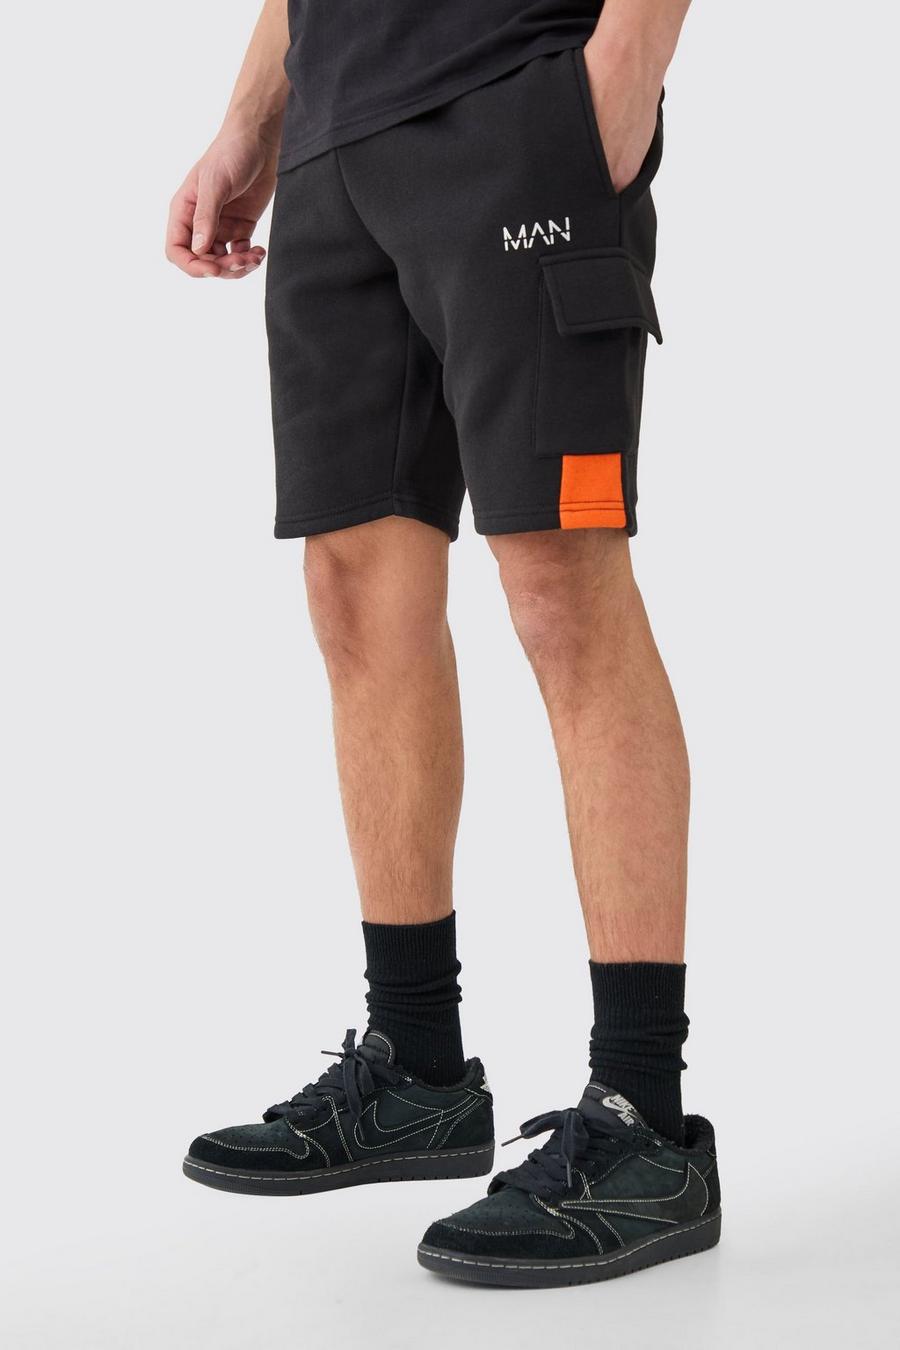 Black MAN Mellanlånga shorts i slim fit med blockfärger